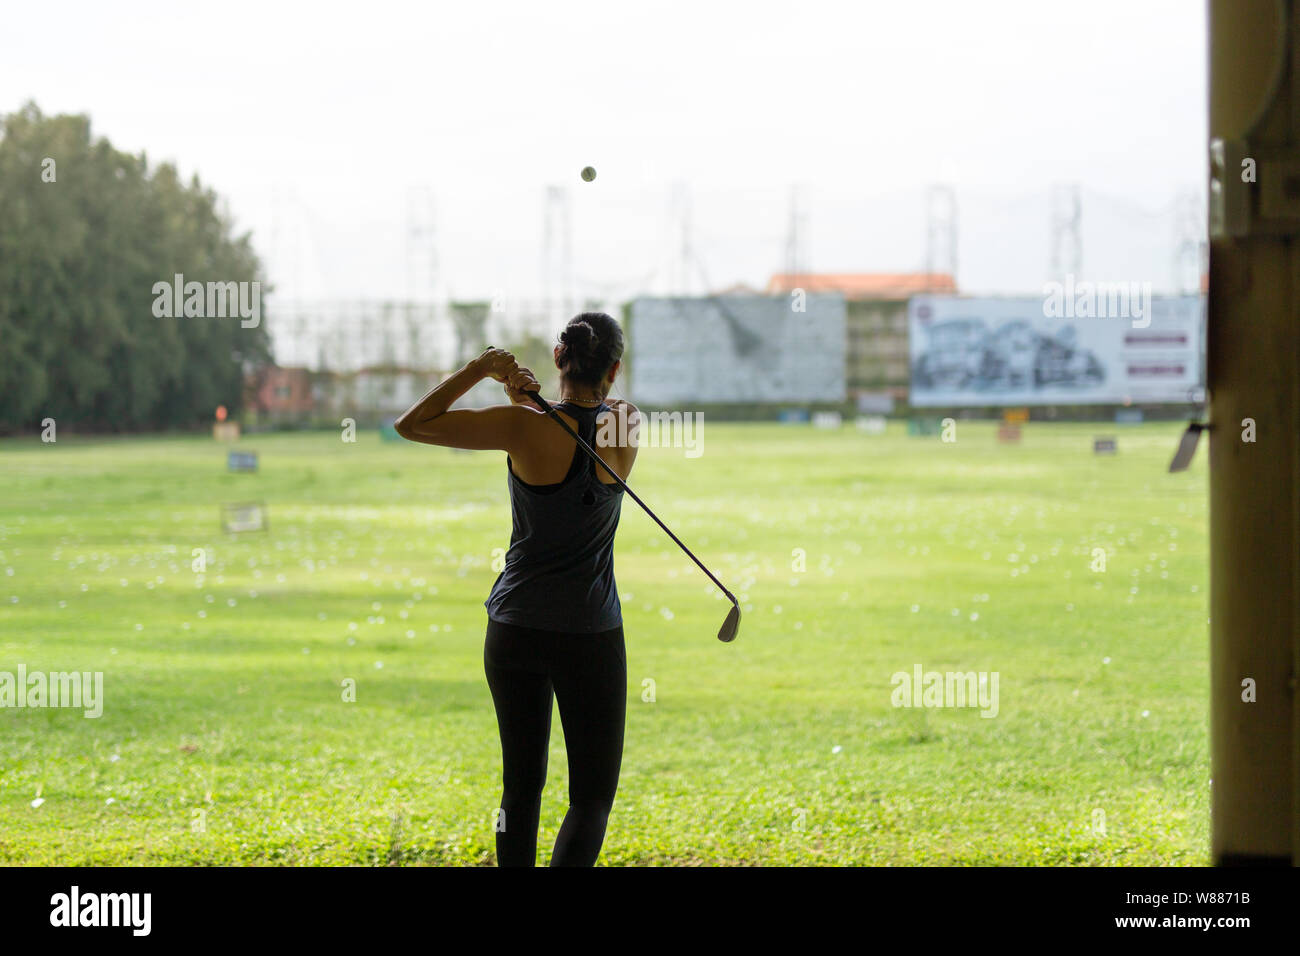 Asiatische Frau üben sein Golf Abschlag auf der Driving Range. Stockfoto